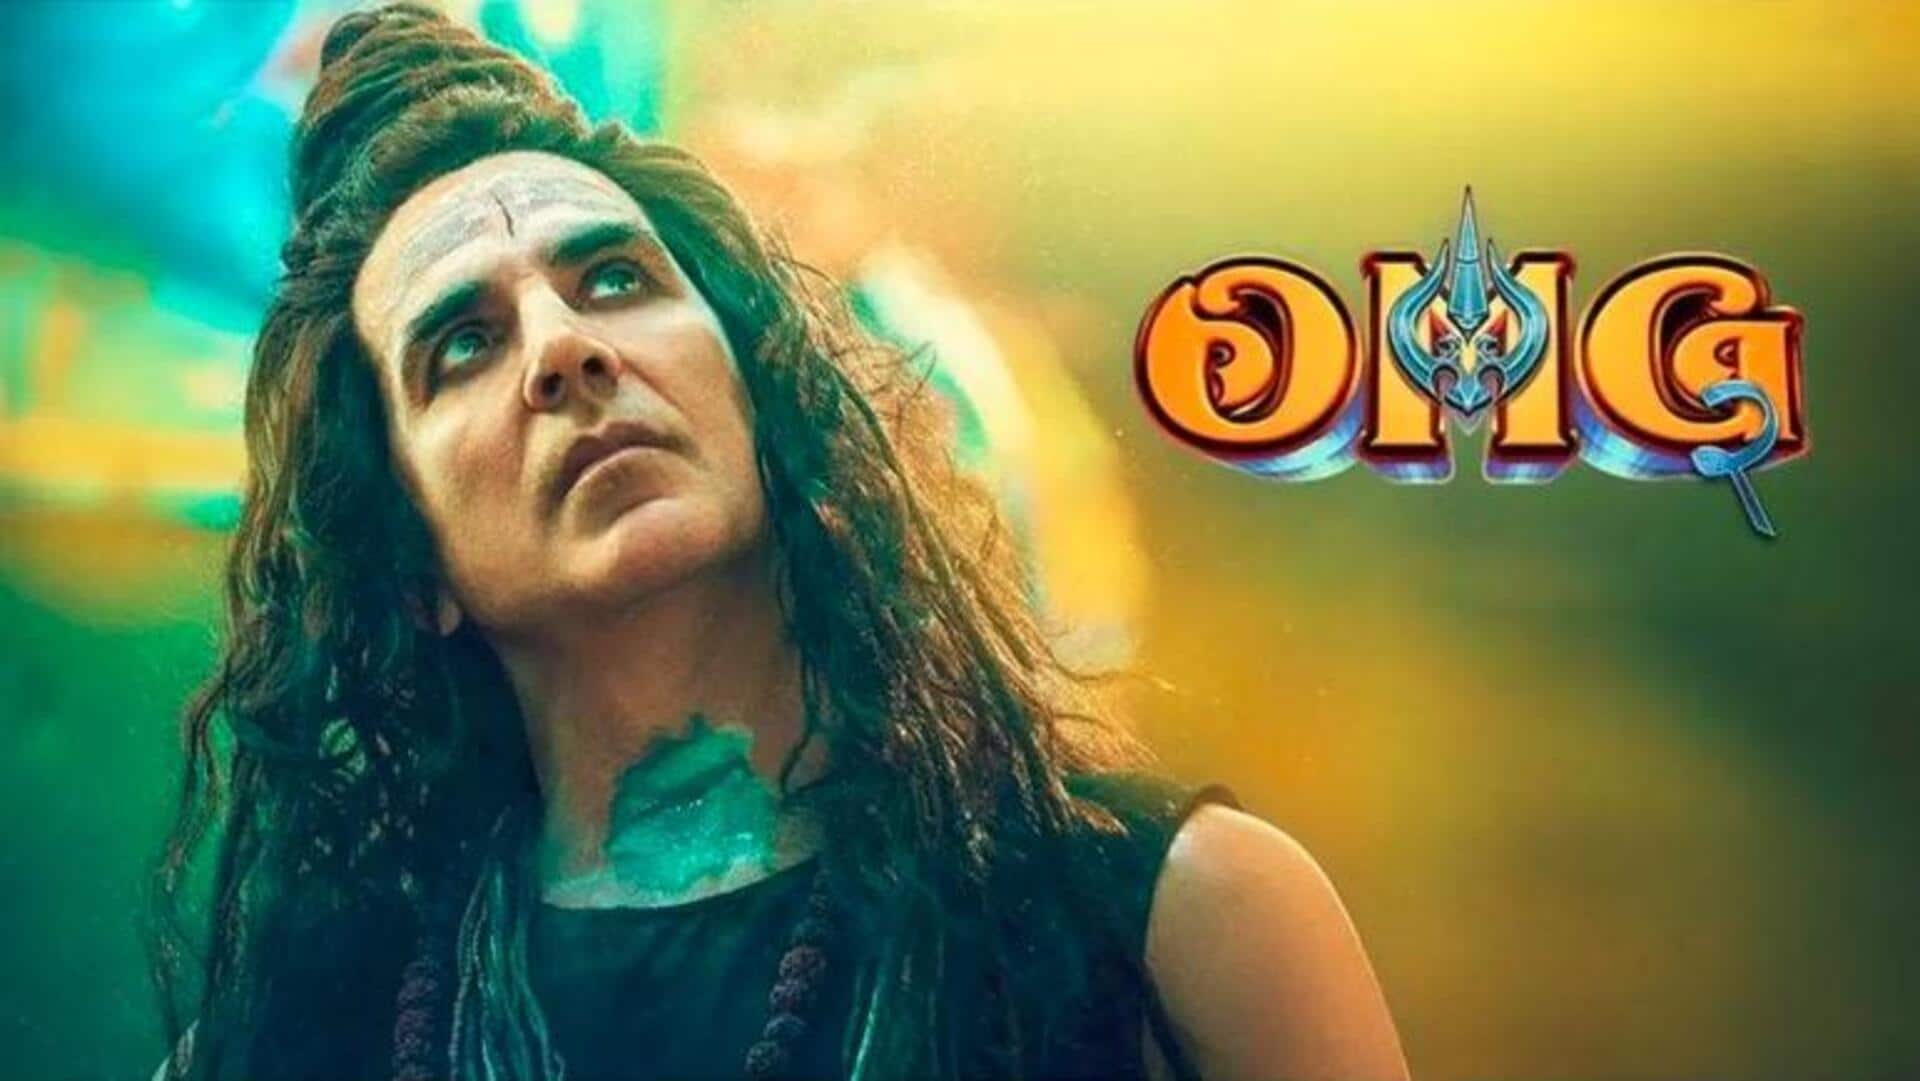 अक्षय कुमार की 'ओह माय गॉड 2' को अब टीवी पर देखें, जानिए कब और कहां 